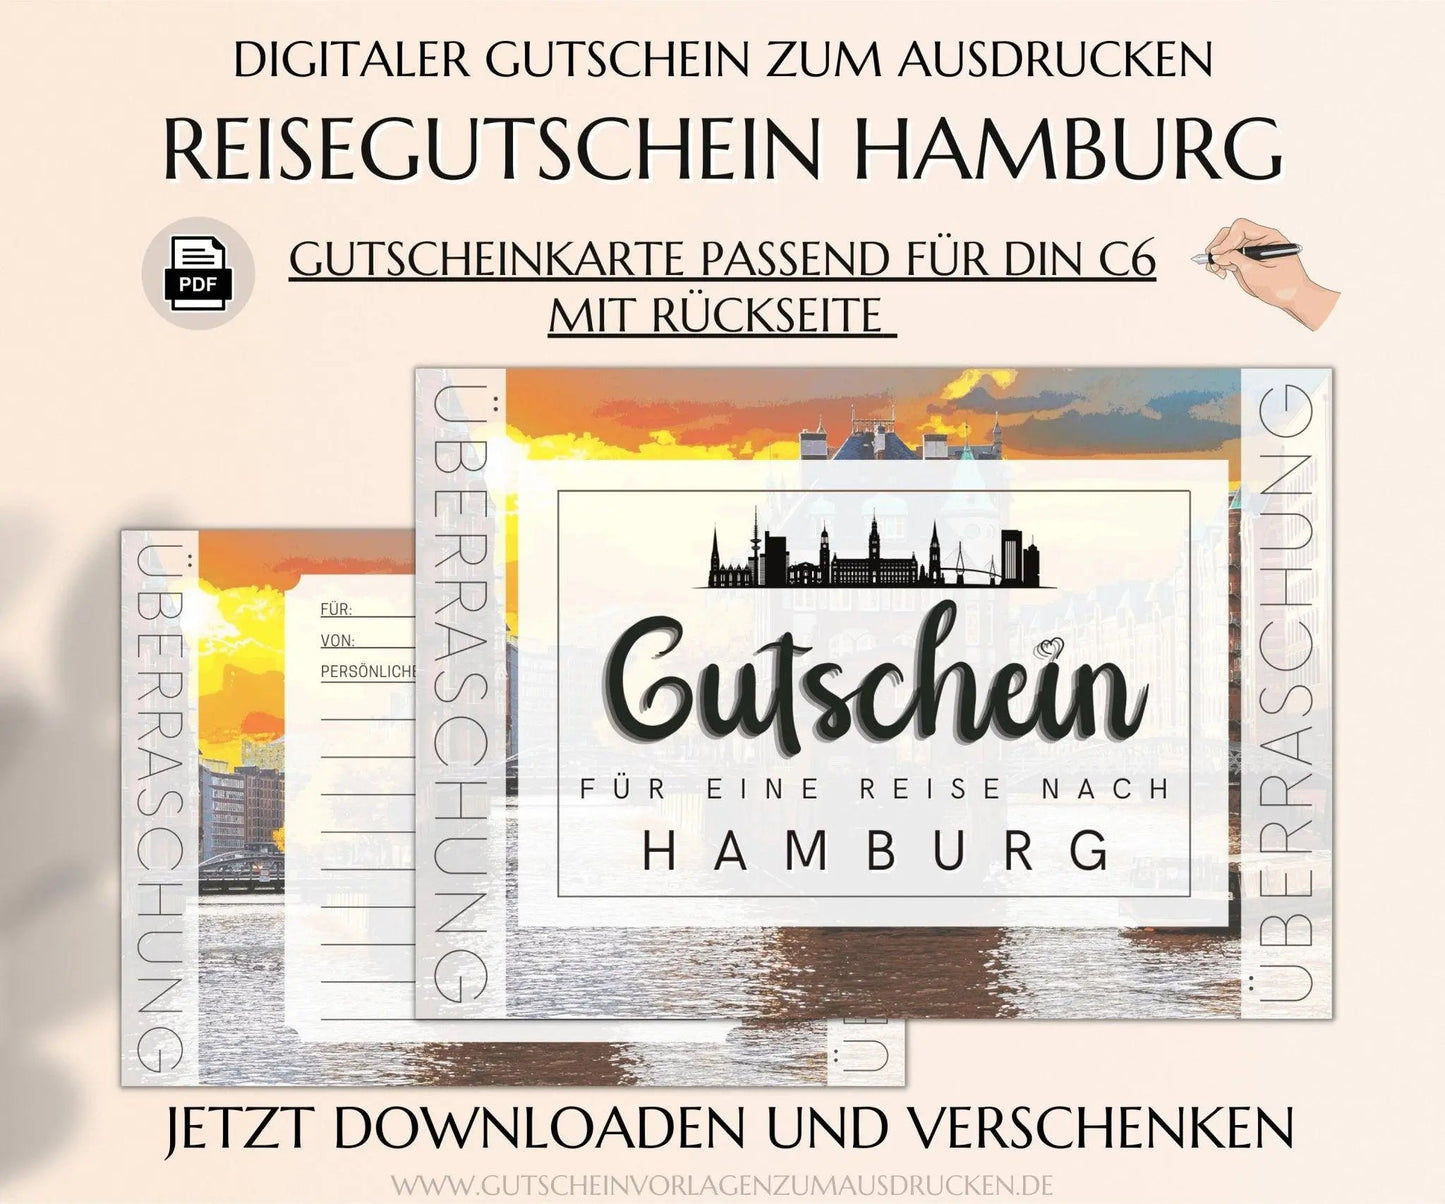 Reisegutschein Hamburg | Gutschein Vorlage zum Ausdrucken | JSK275 - JSKDesignStudio.de